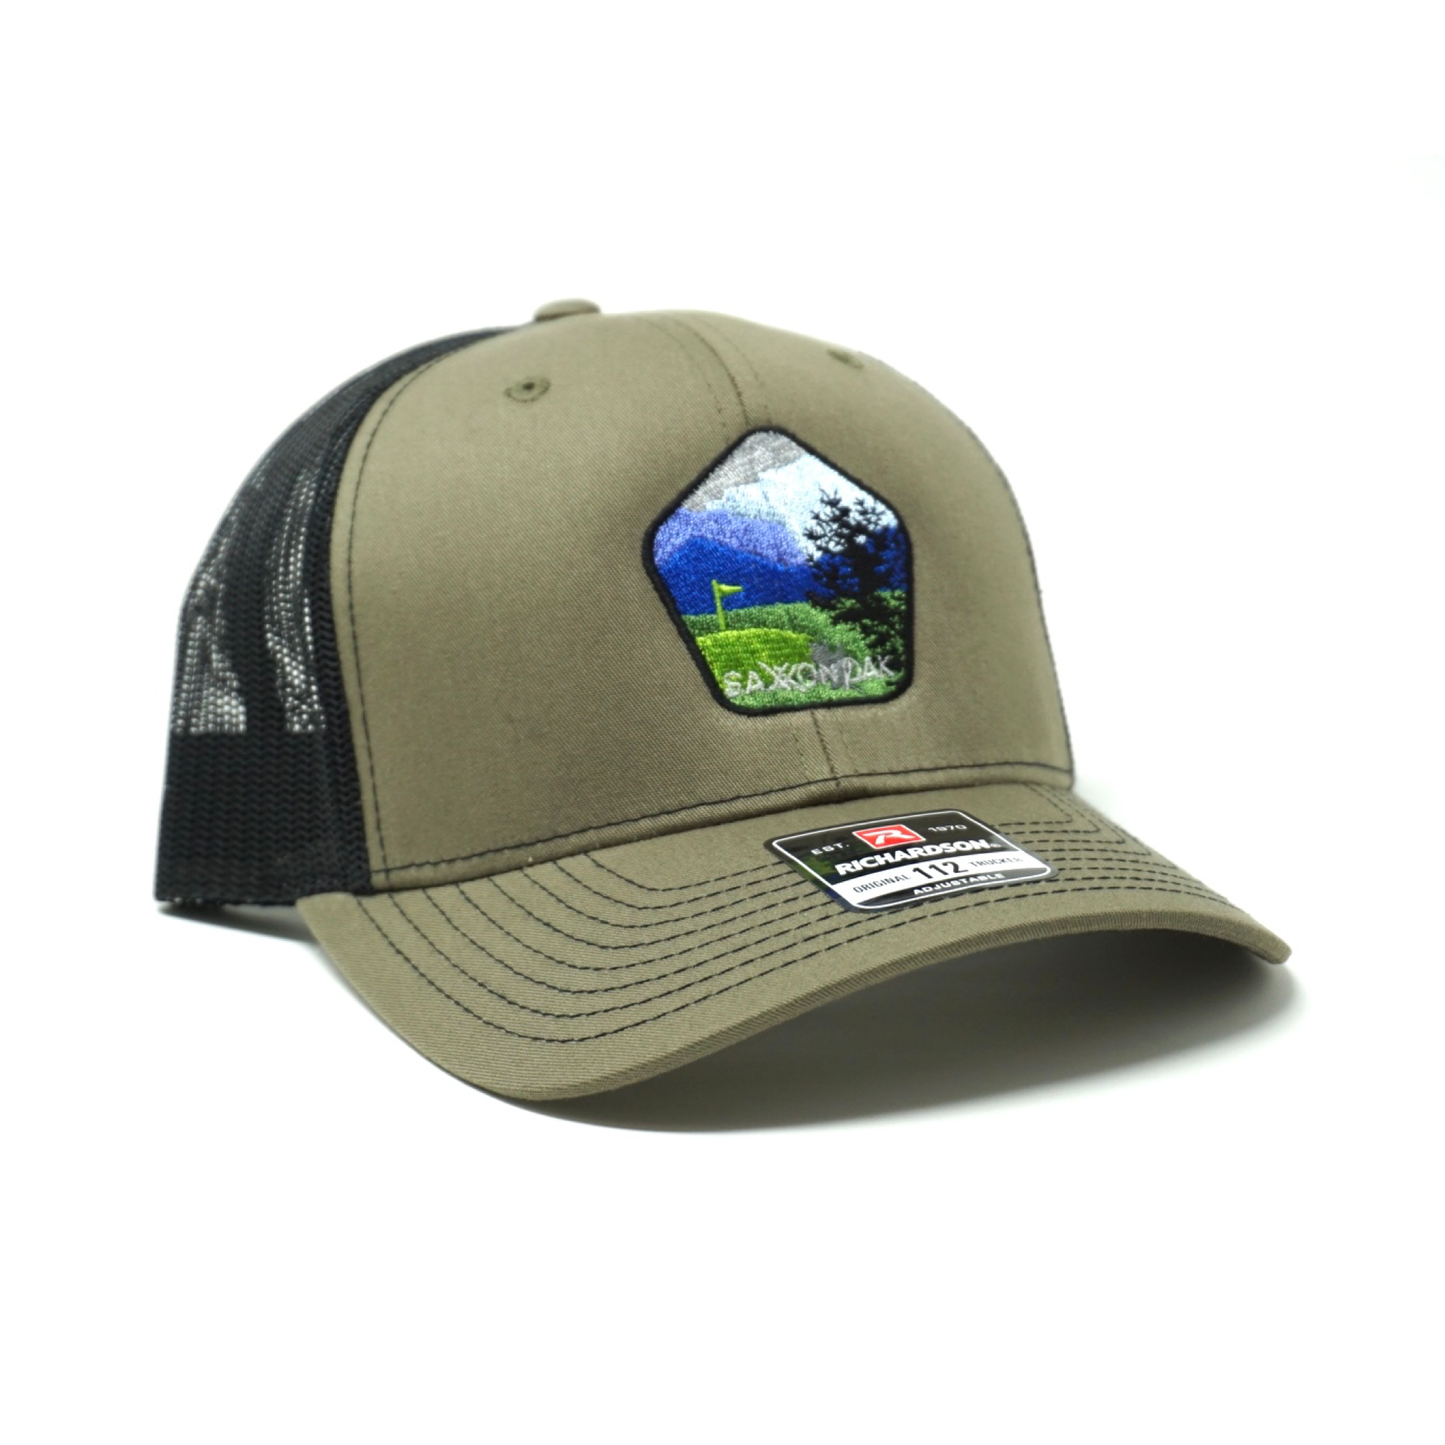 The Colorado Trucker Hat